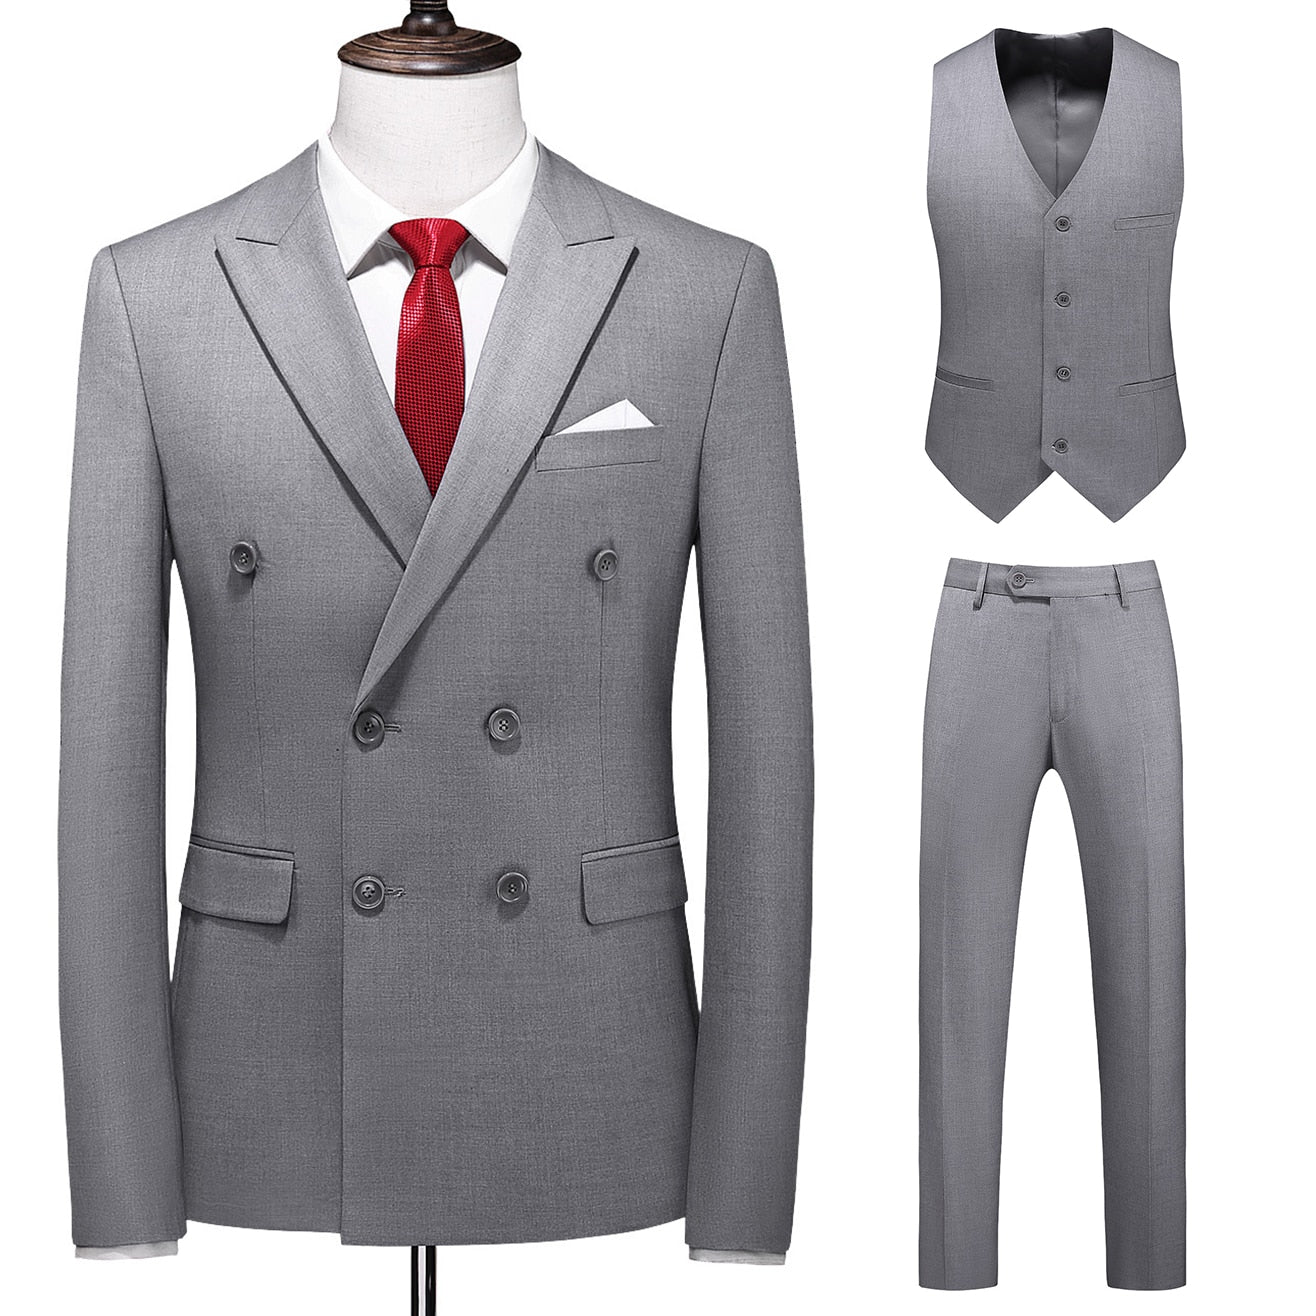 Dreiteiliger Männer Anzug Zweireiher Solide Business Formale Hochzeit Klassische  Slim Fit Smoking Weste Jacke Hosen